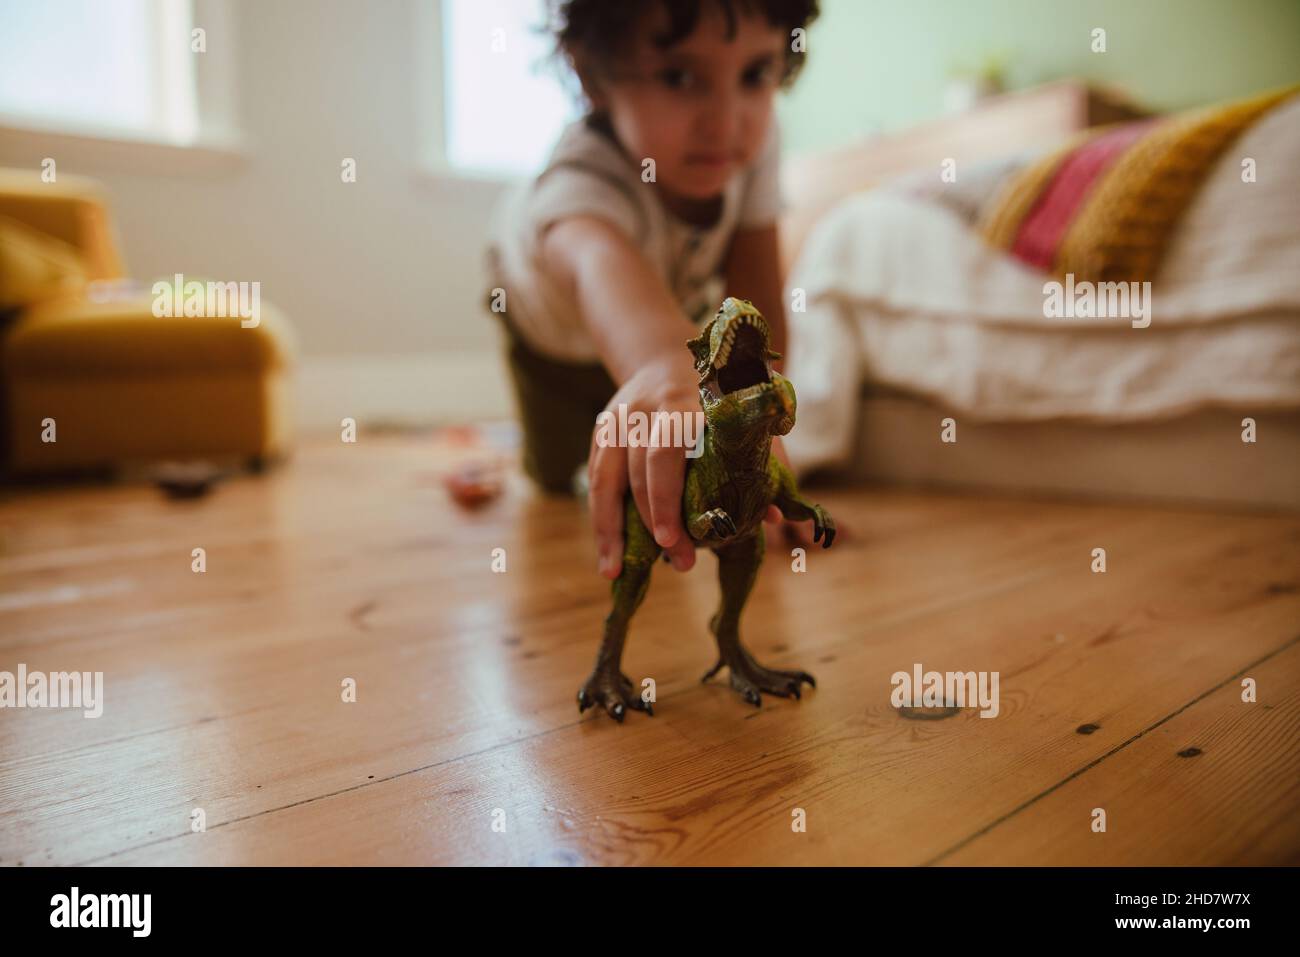 Ragazzo etnico che gioca con un dinosauro t-rex in casa. Adorabile ragazzo giovane che tiene un giocattolo ruggente di dinosauro mentre si inginocchiava nella sua area di gioco. Foto Stock